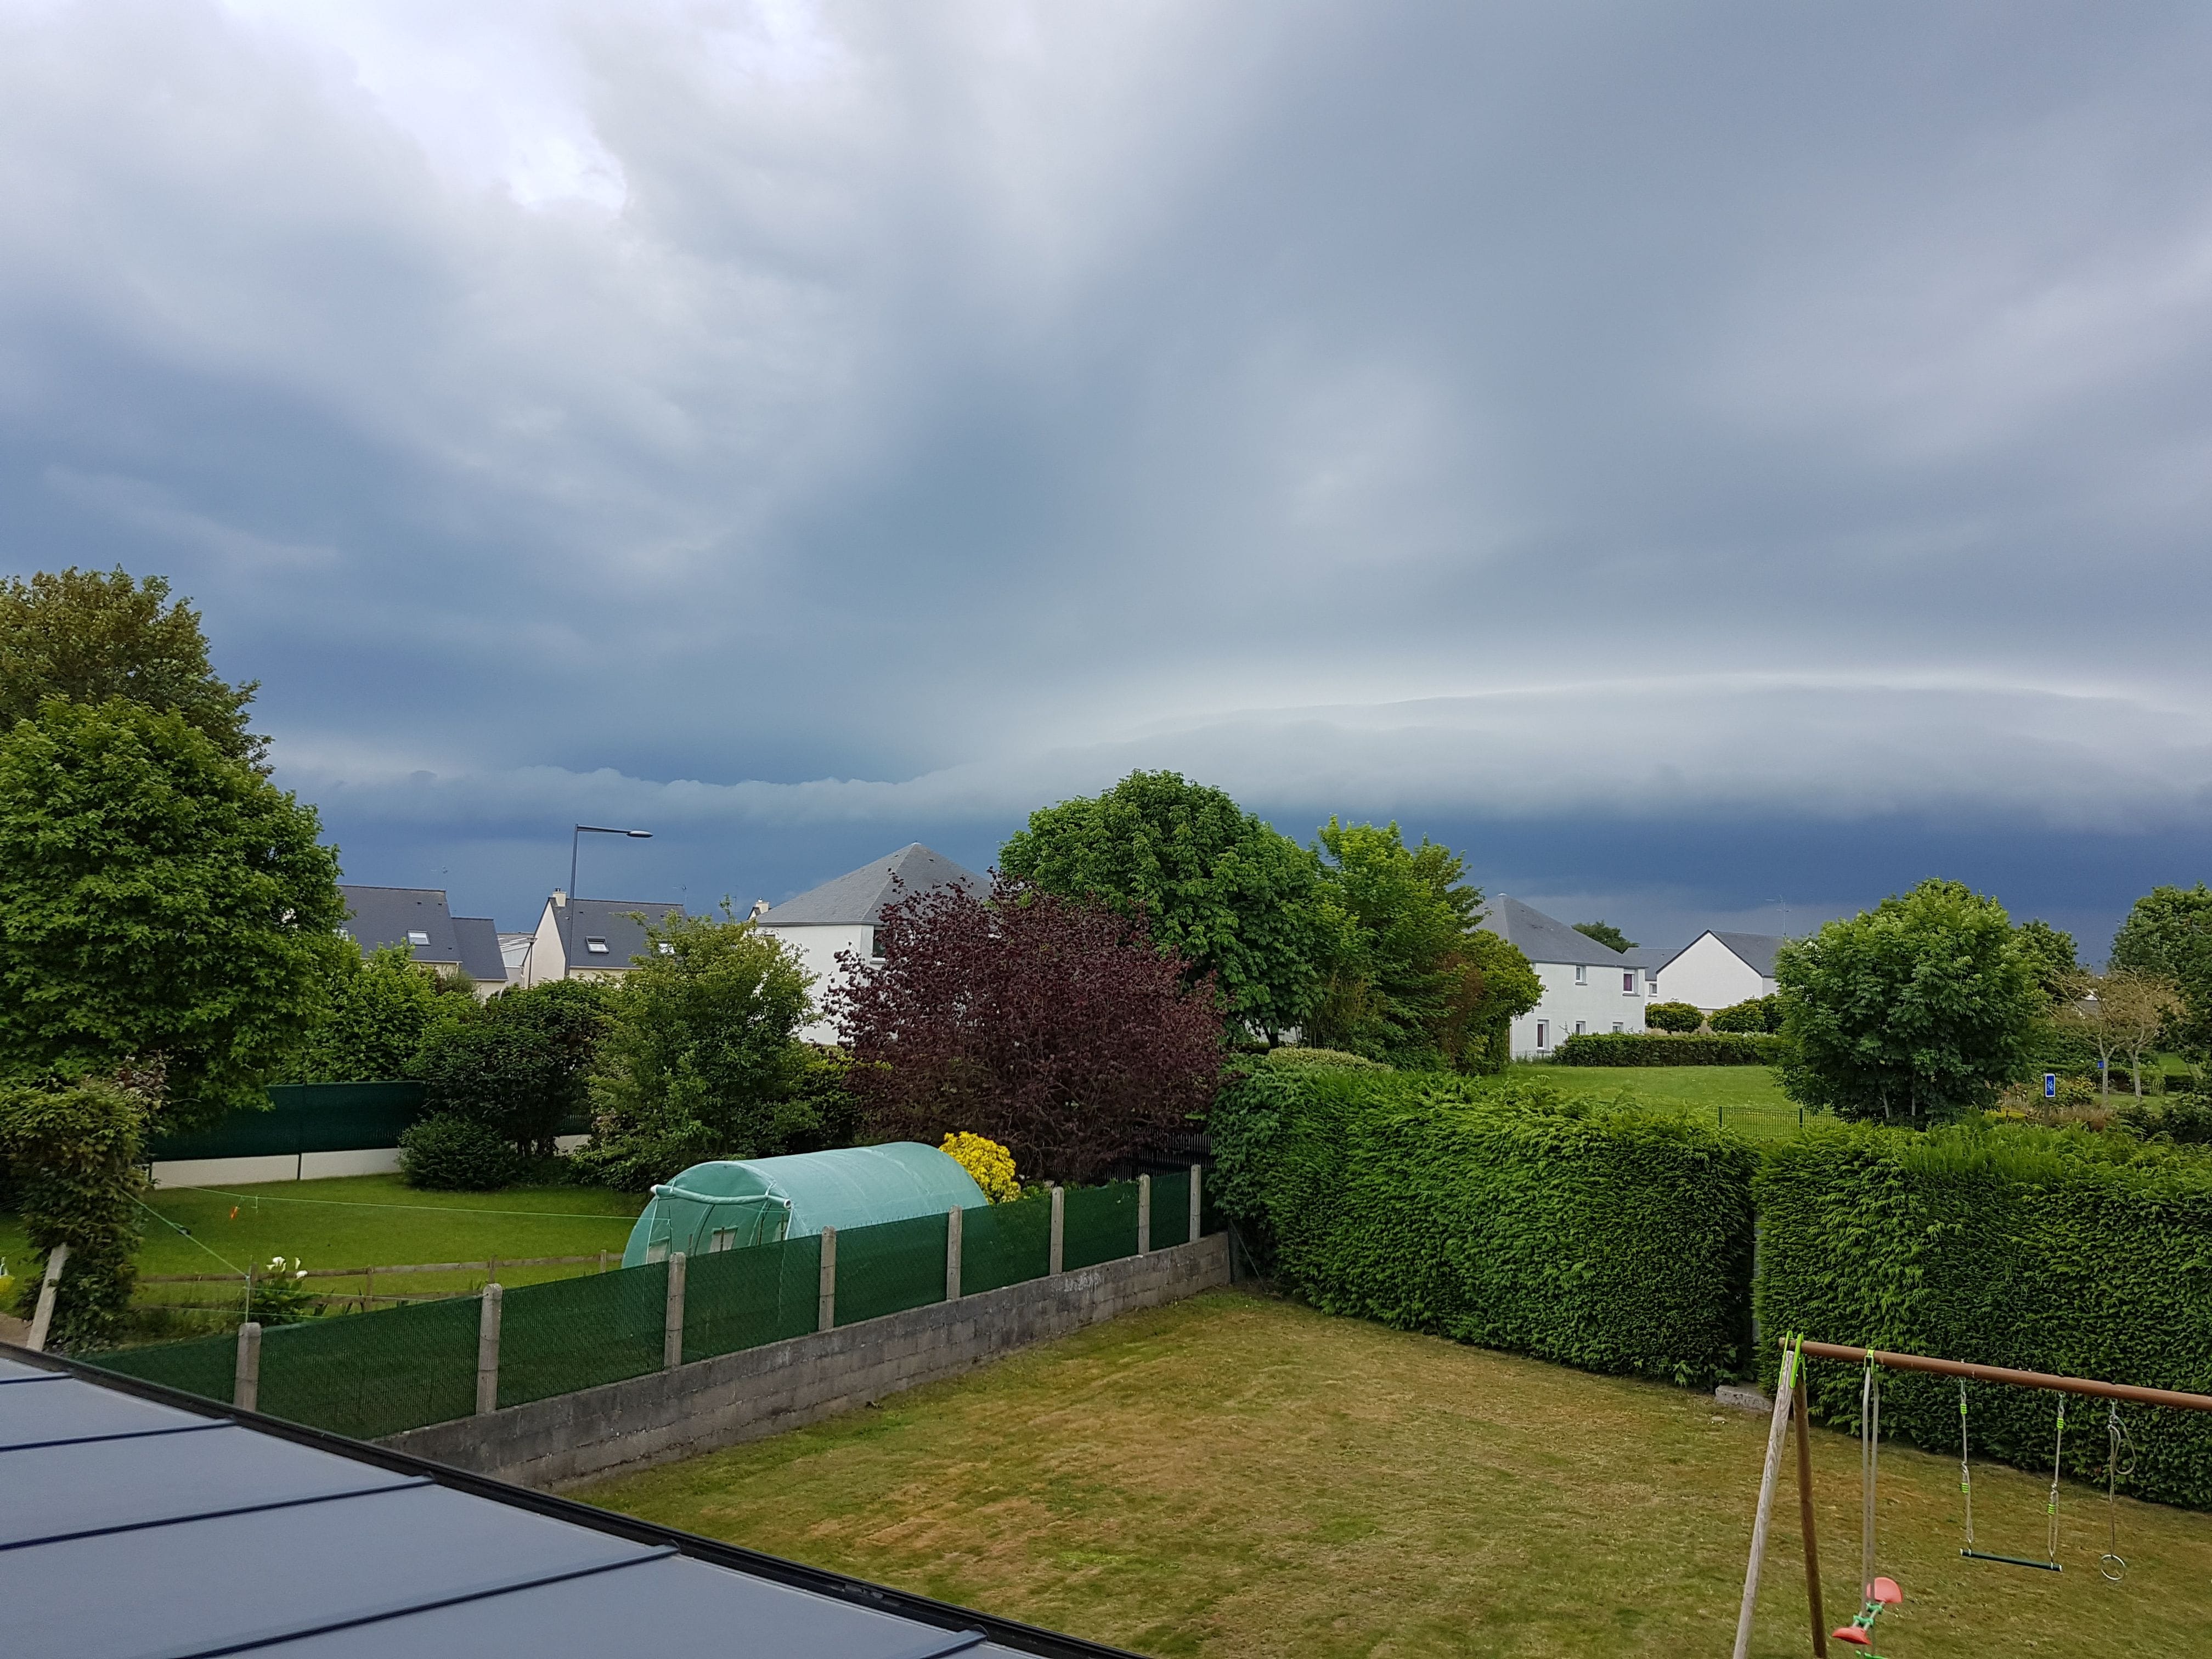 L'orage arrive.... 1h00 après 27.8 mm déversés sur la commune (22440 Trémuson) - 03/06/2018 18:07 - Stephane BARTEAU